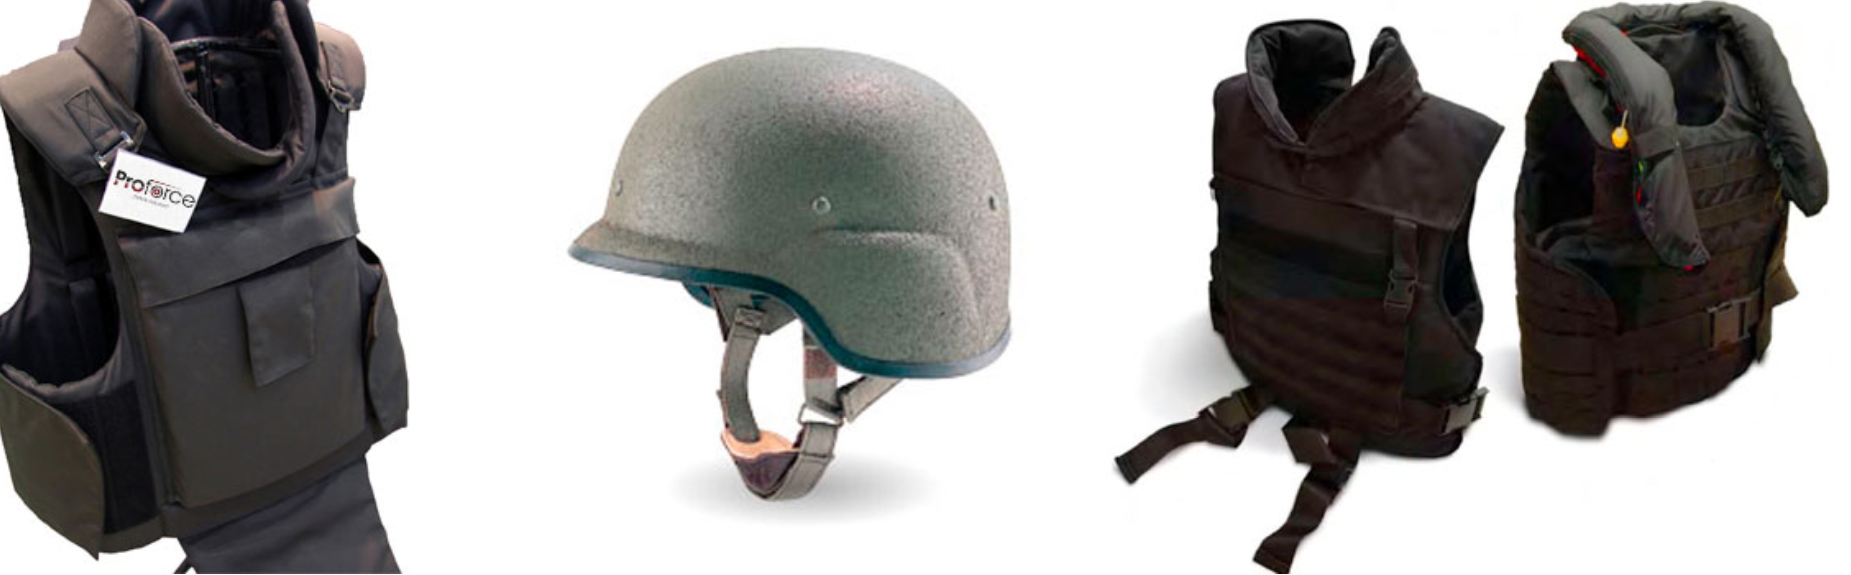 Ballistic Helmets & Vests